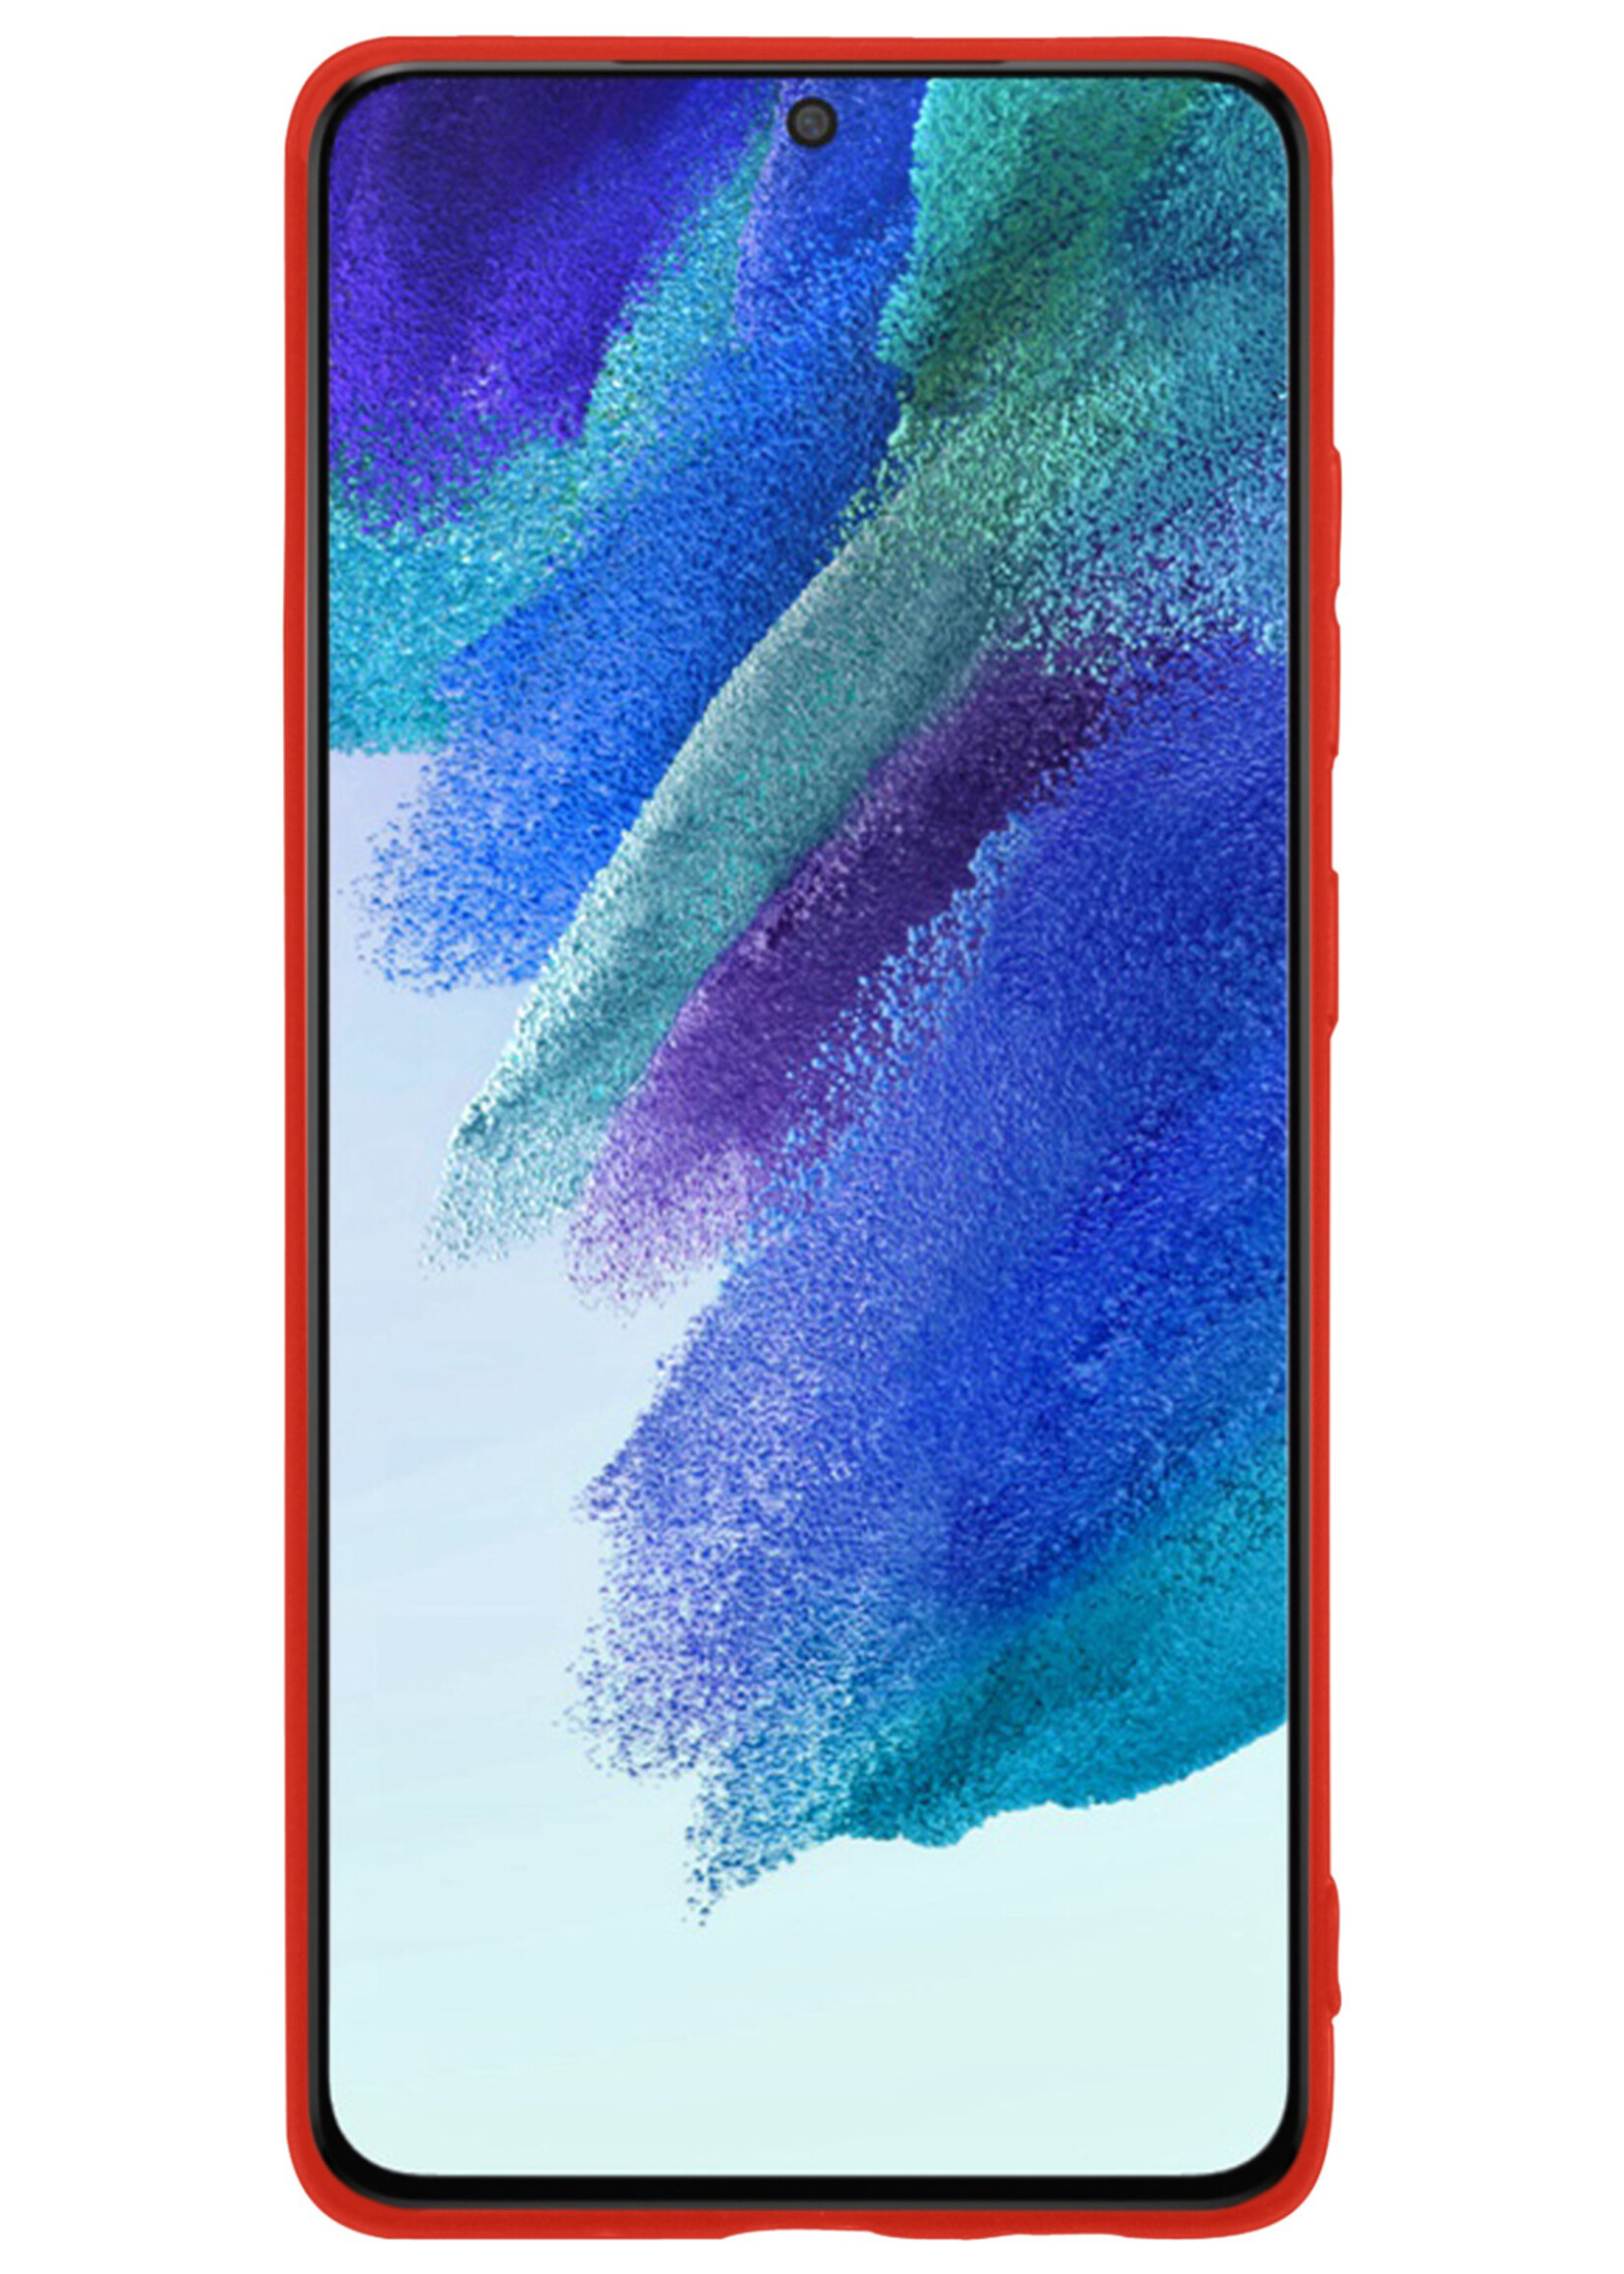 BTH Samsung Galaxy S21 FE Hoesje Siliconen Case Cover - Samsung S21 FE Hoesje Cover Hoes Siliconen - Rood